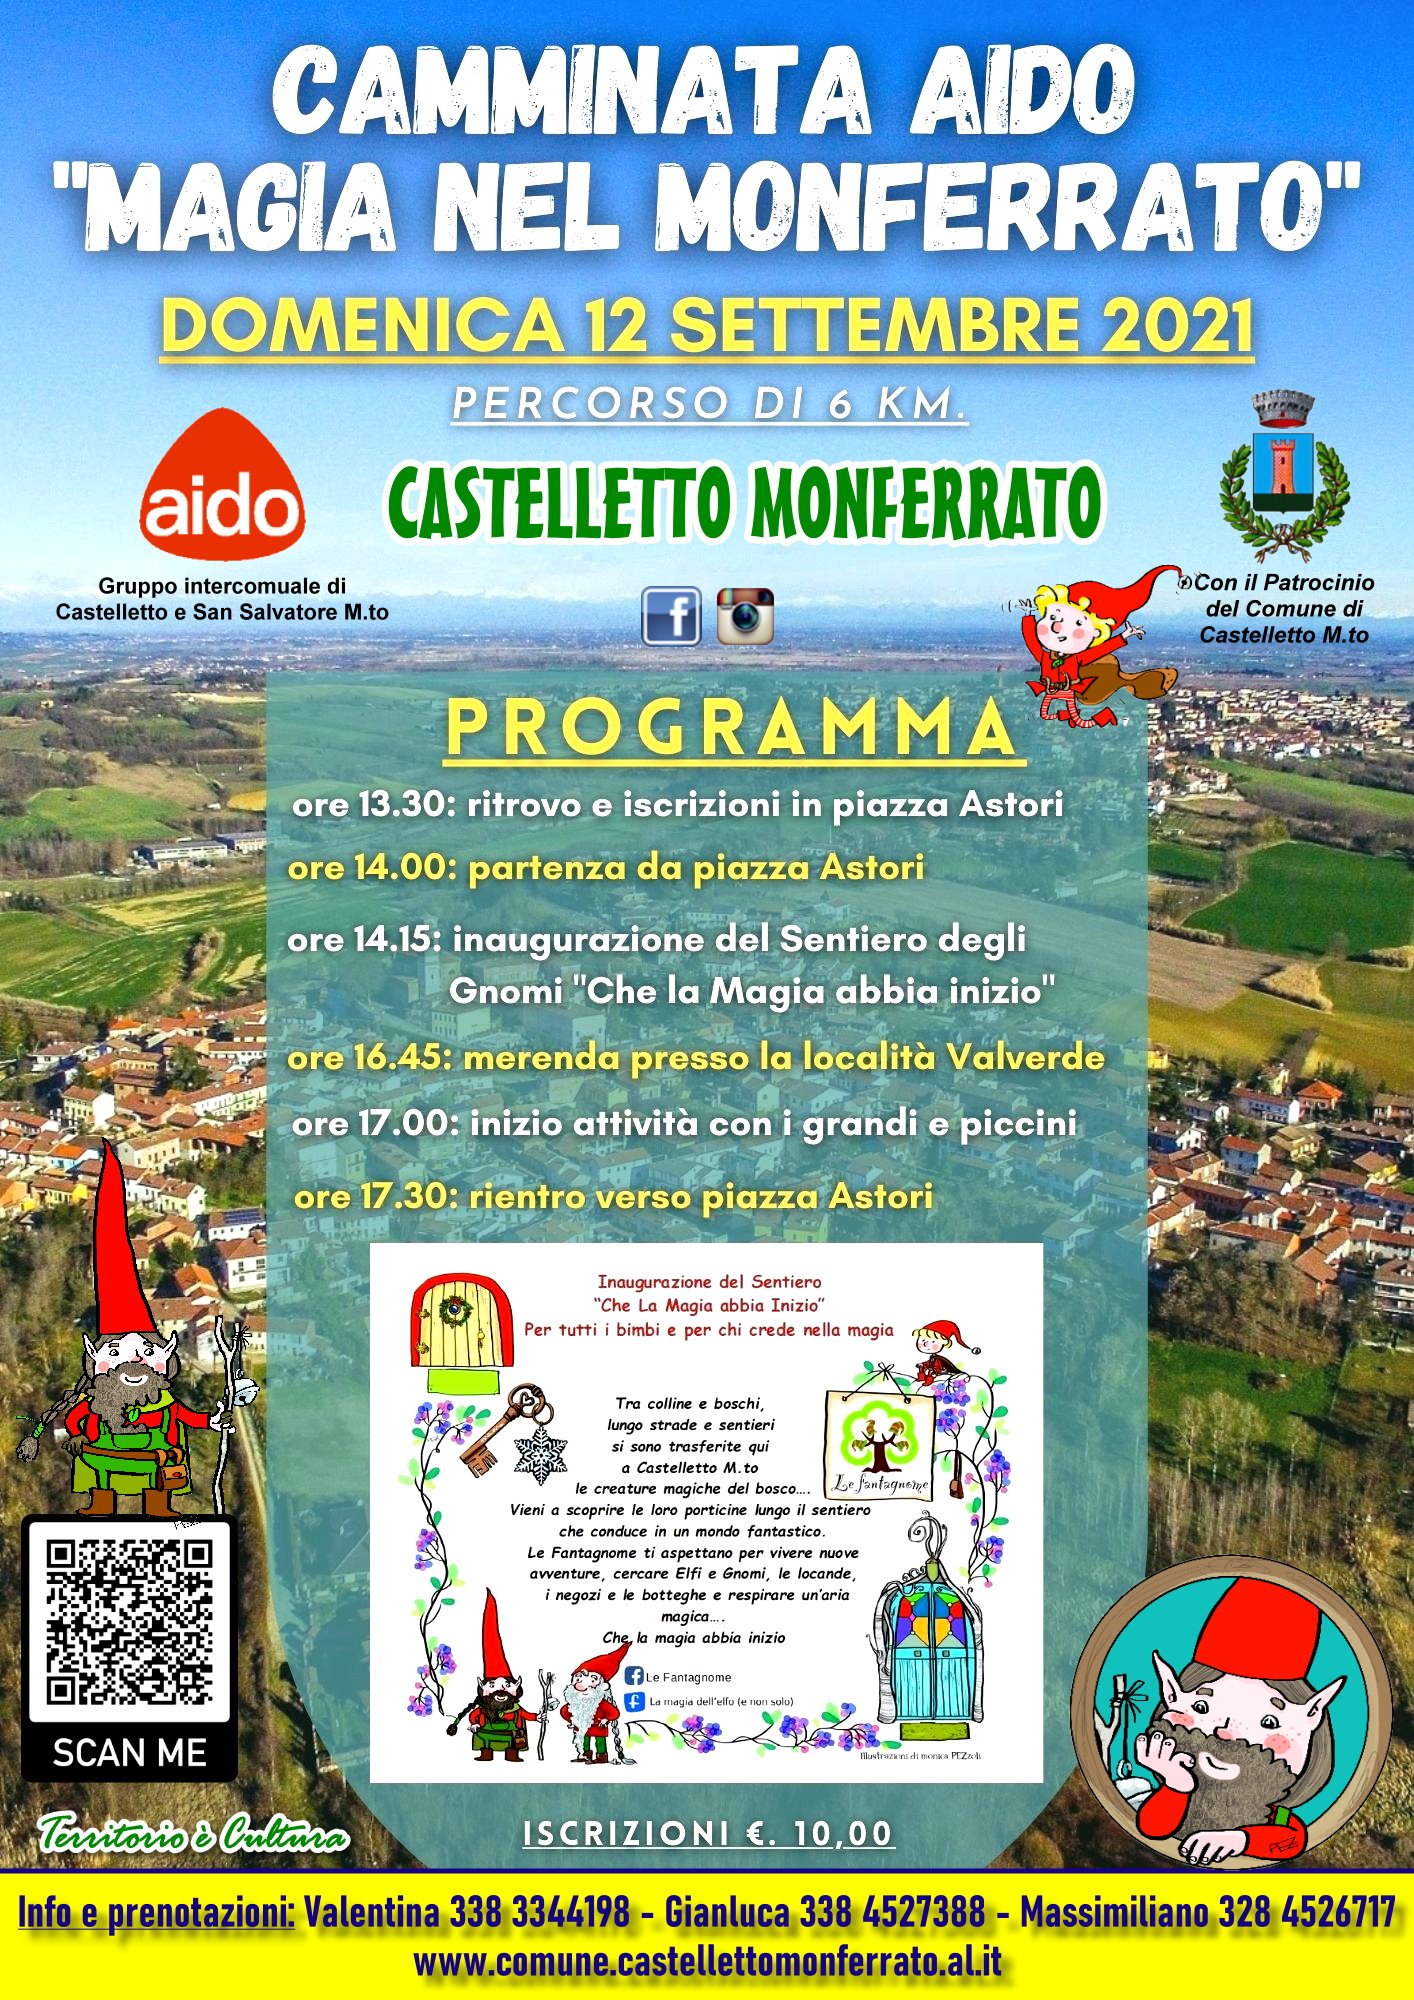 Domenica 12 settembre camminata lungo il “Sentiero degli Gnomi” a Castelletto Monferrato